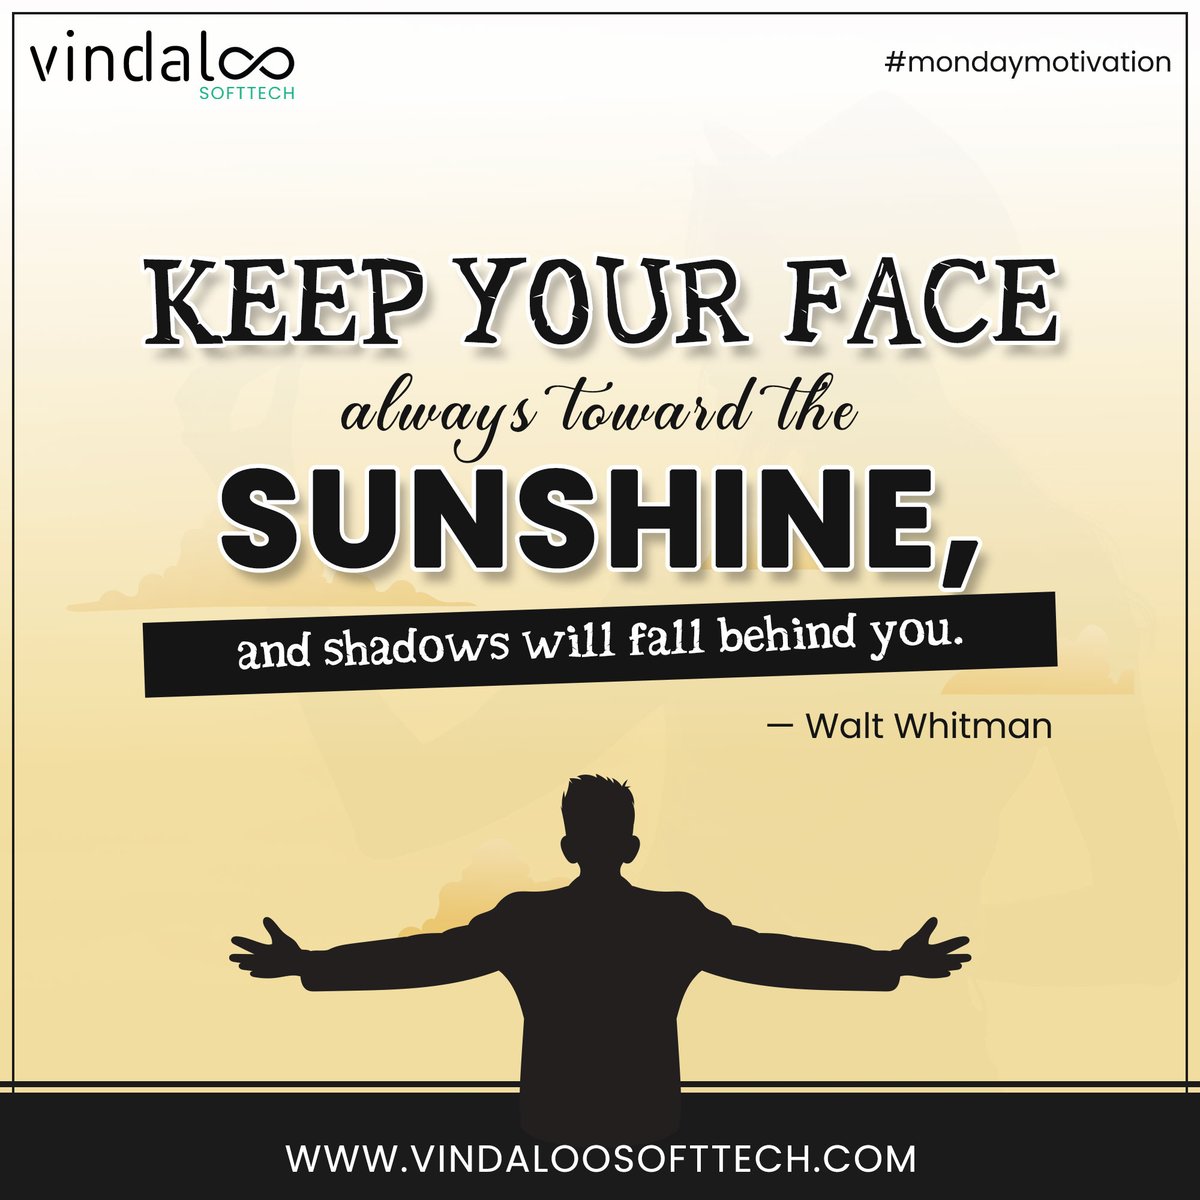 'Keep your face always toward the sunshine, and shadows will fall behind you.' — Walt Whitman
#mondayfunday #lifestyle #motivation #mondaythought #mondaymotivation #mondayquotes #quoteoftheday #vindaloosofttech